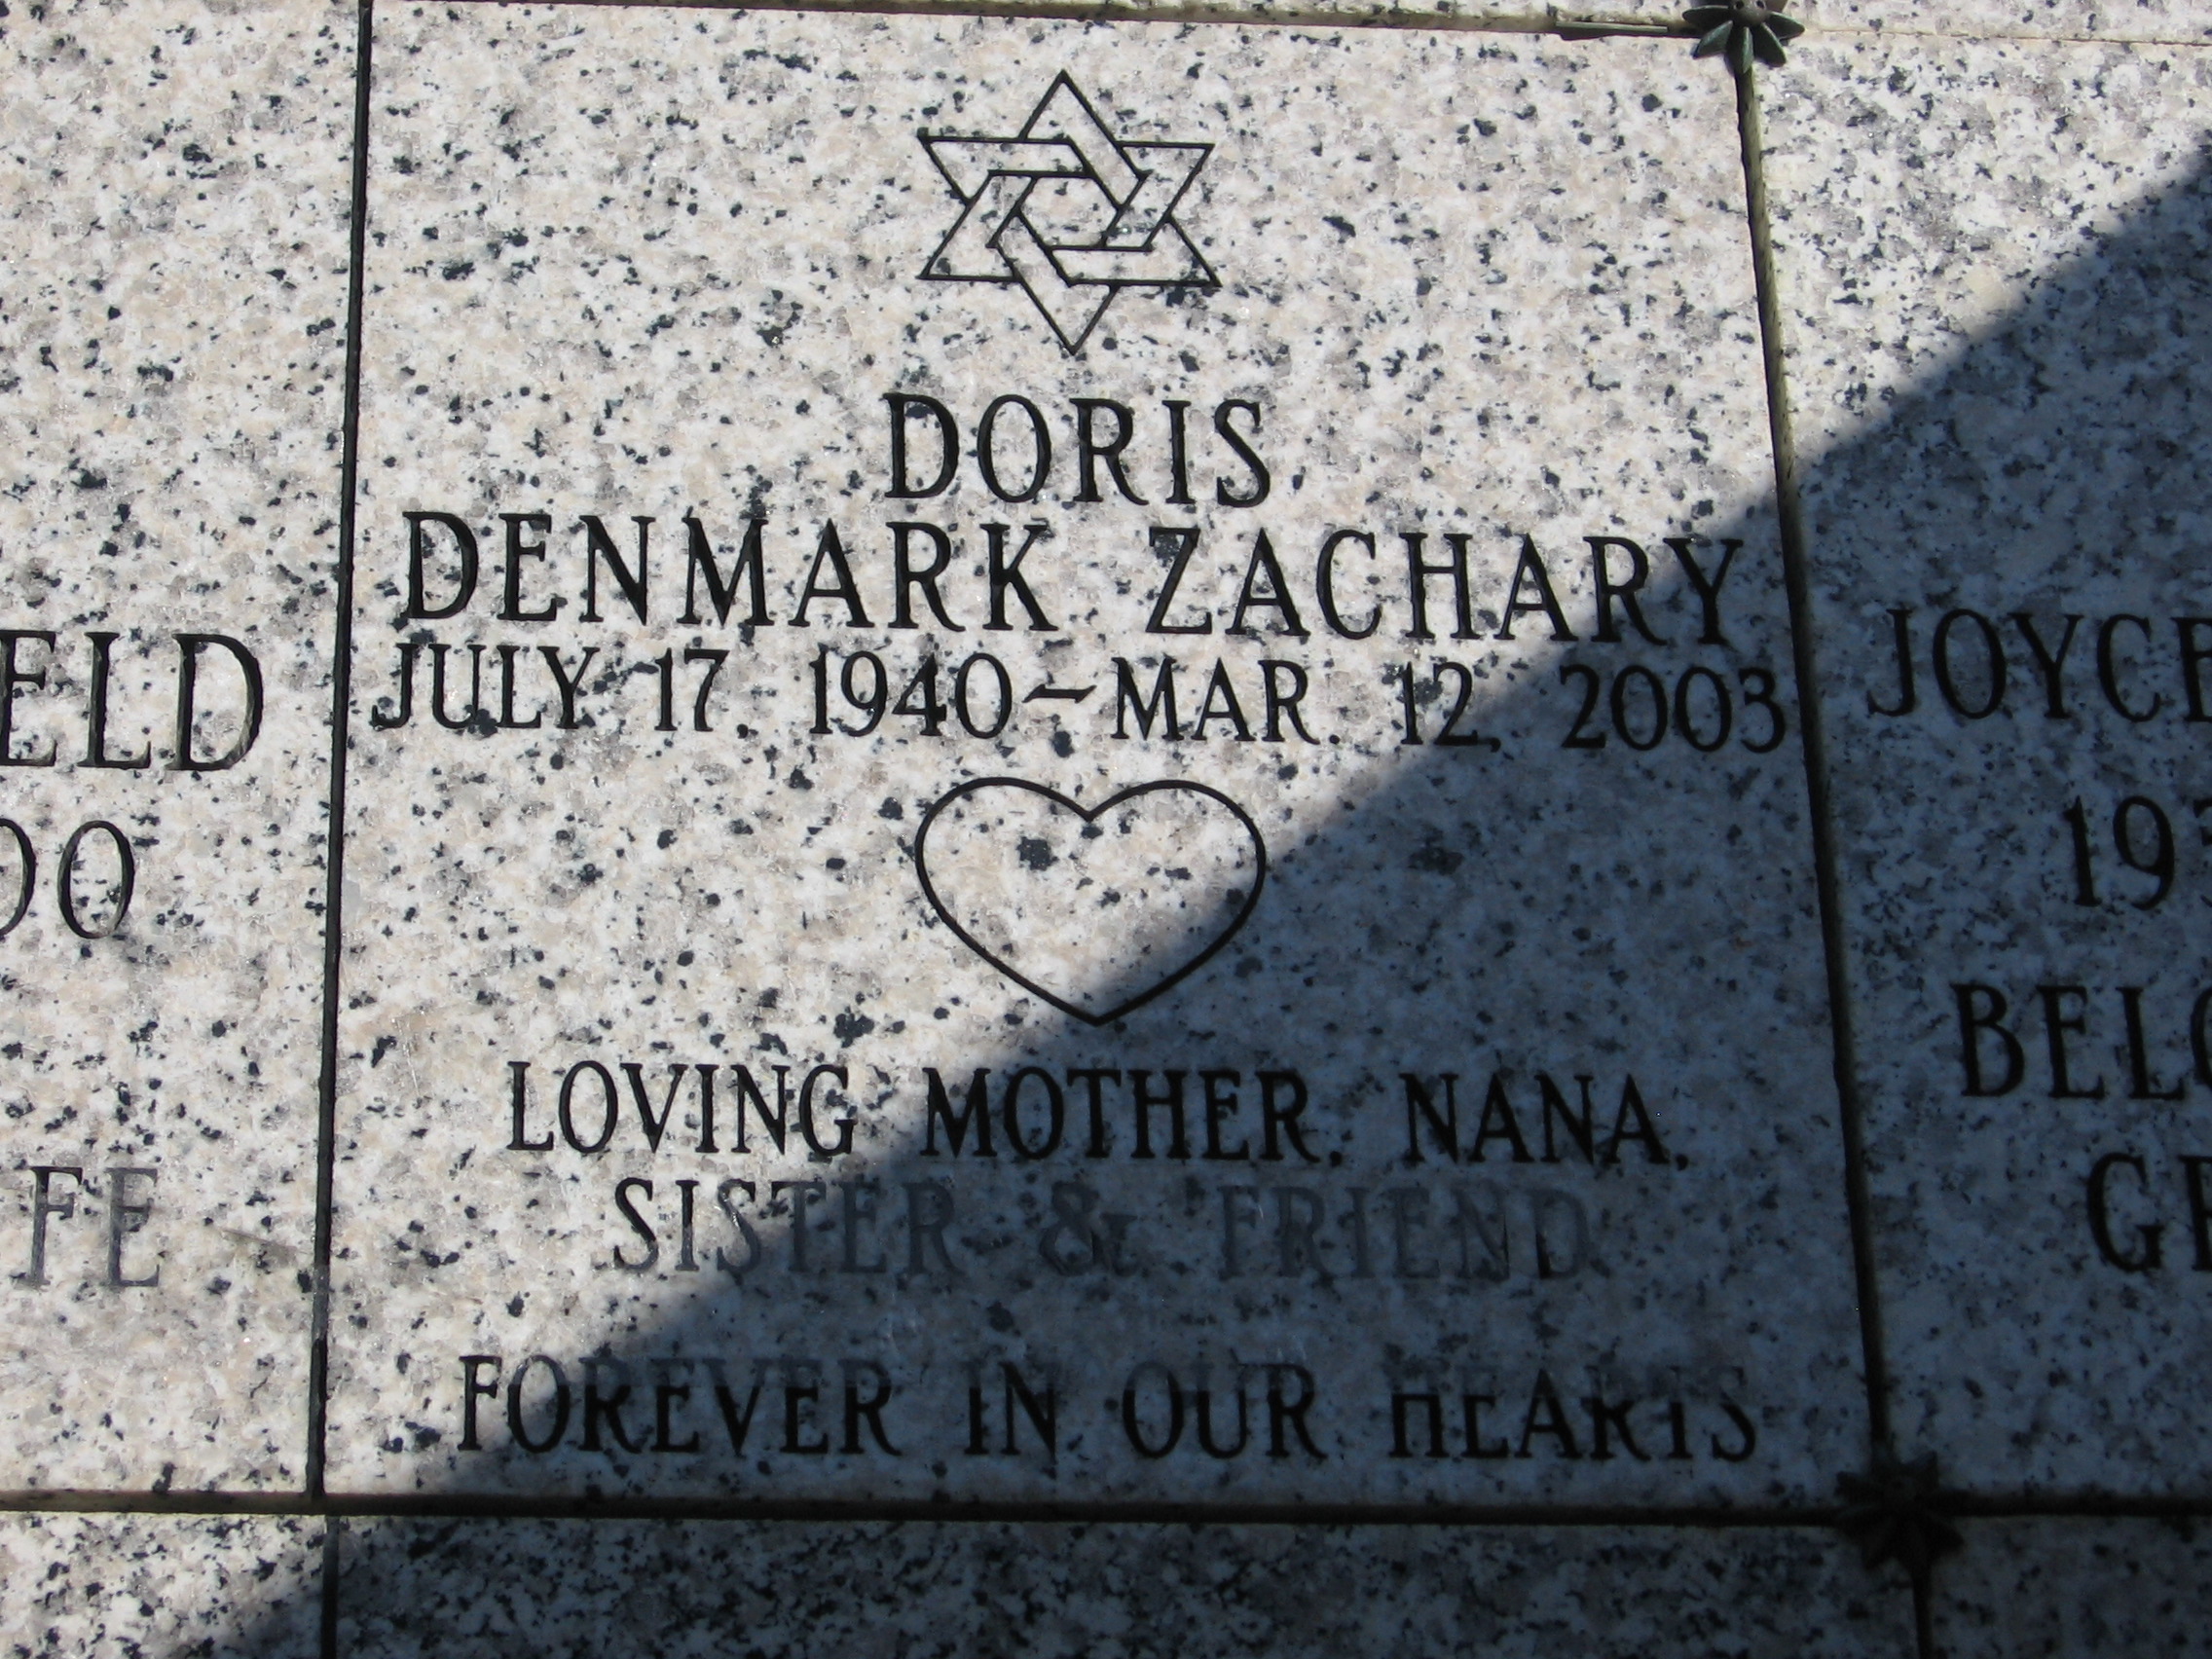 Doris Denmark Zachary